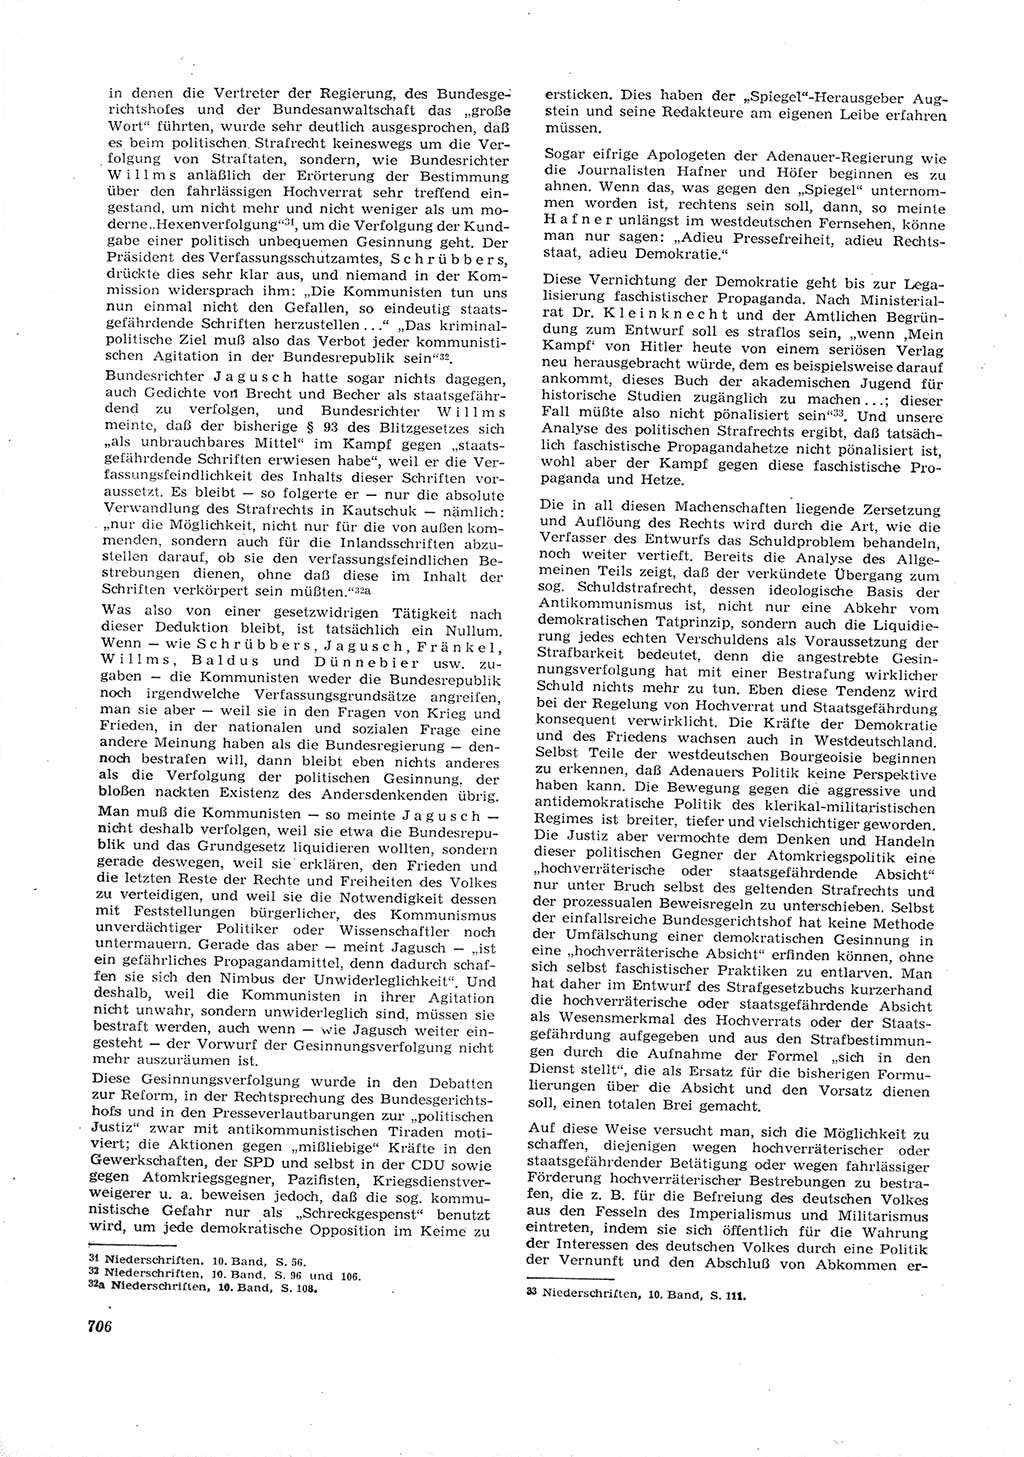 Neue Justiz (NJ), Zeitschrift für Recht und Rechtswissenschaft [Deutsche Demokratische Republik (DDR)], 16. Jahrgang 1962, Seite 706 (NJ DDR 1962, S. 706)